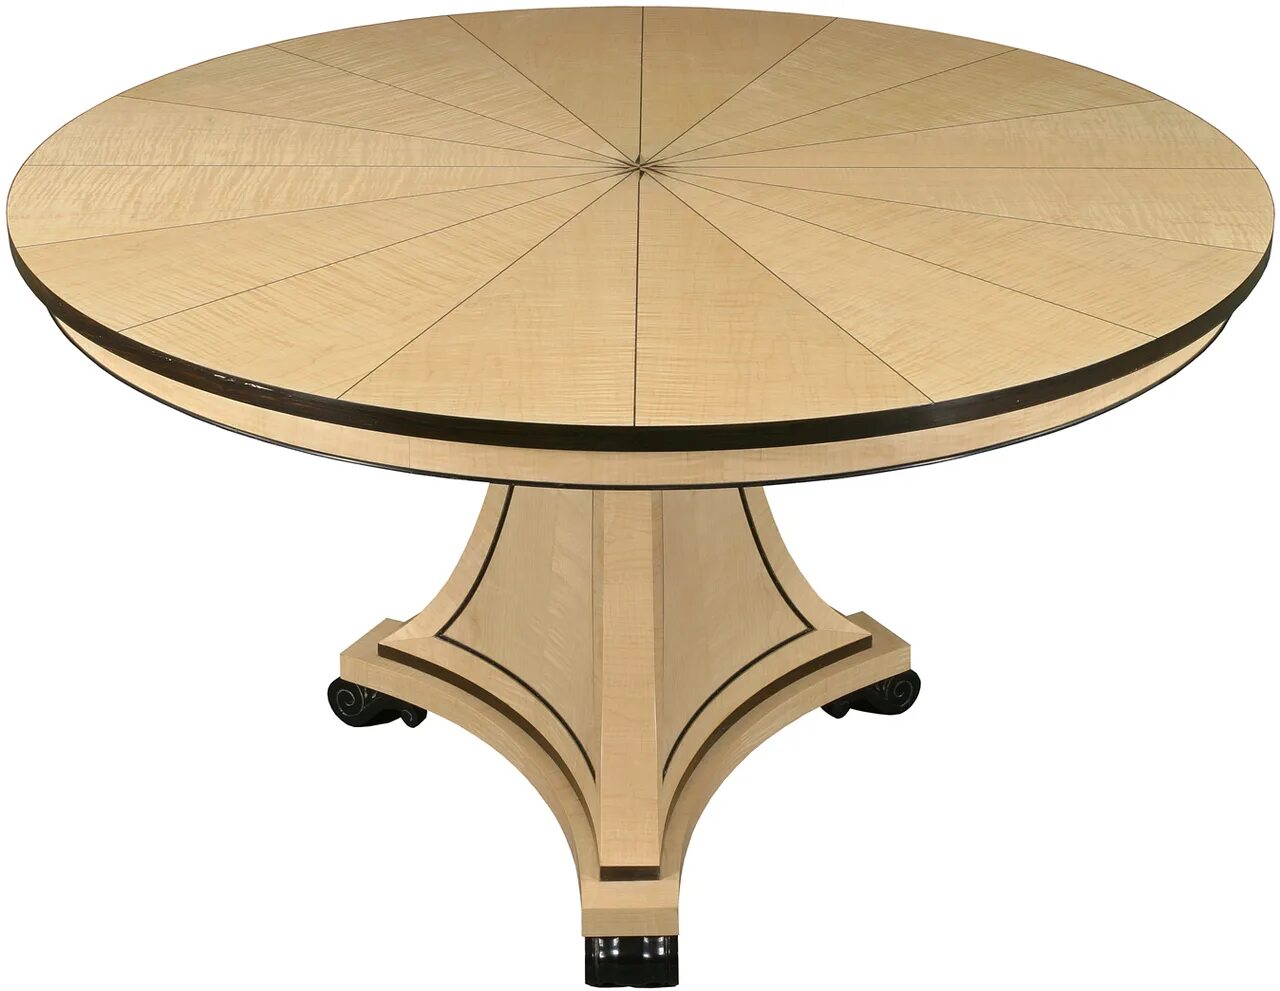 Hoff круглый стол 110. Круглый стол 80 см раскладной. Деревянный раскладной круглый стол MT-2282. Круглый стол диаметр 80 см трансформер.